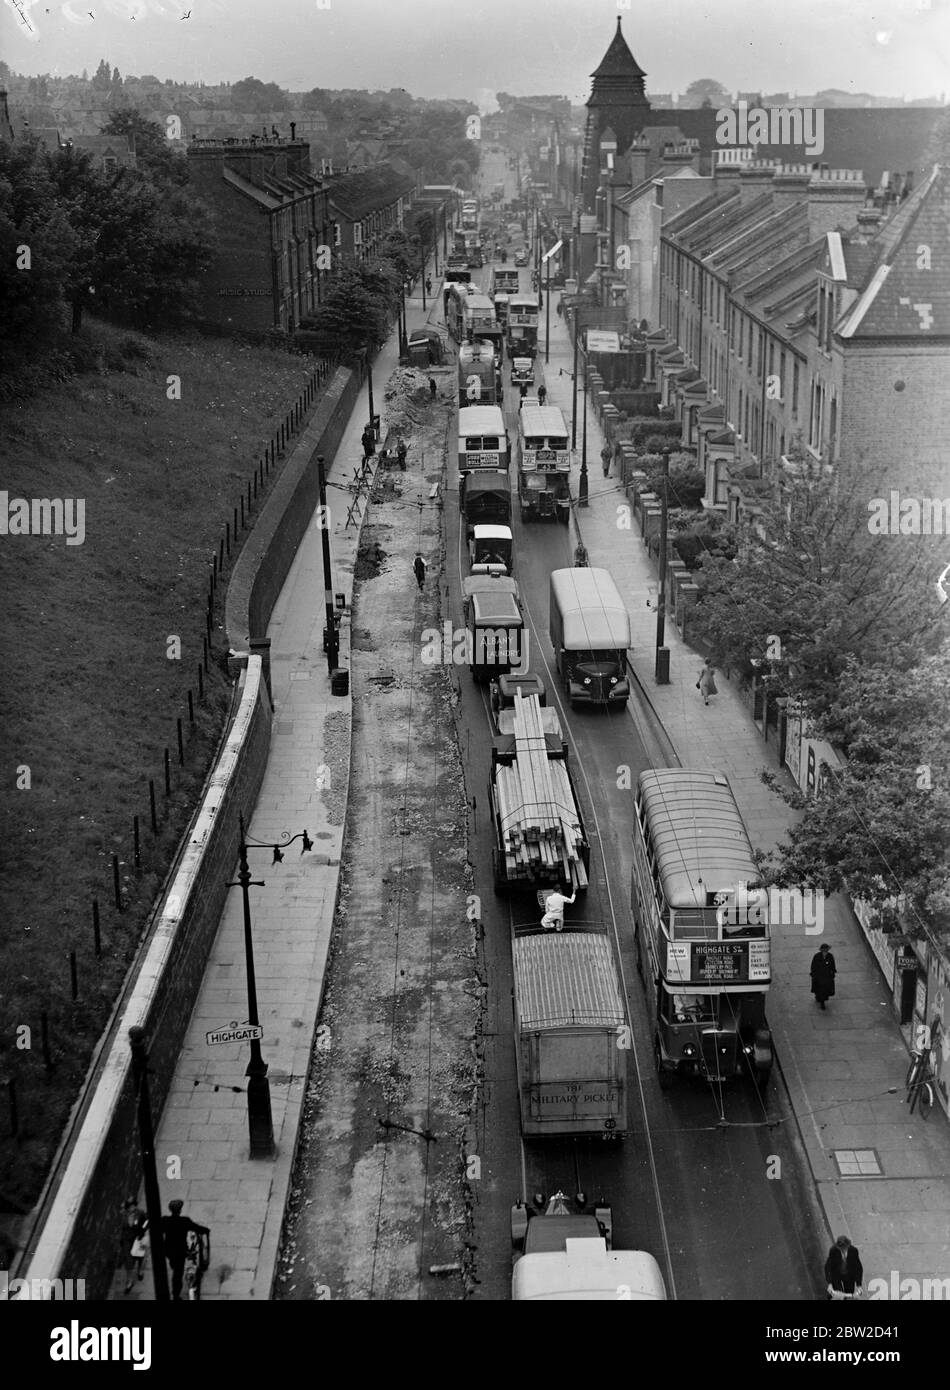 Verkehrsströme eine Meile lang erstreckt sich die Archway Road, Highgate, wo jetzt nutzlose Straßenbahnlinien von der Straße genommen werden. Die Trolleybusse haben die Straßenbahnen in der Archway Road ersetzt. Foto zeigt die langen Staus in der Archway Road, Highgate. 20 Juni 1939 Stockfoto